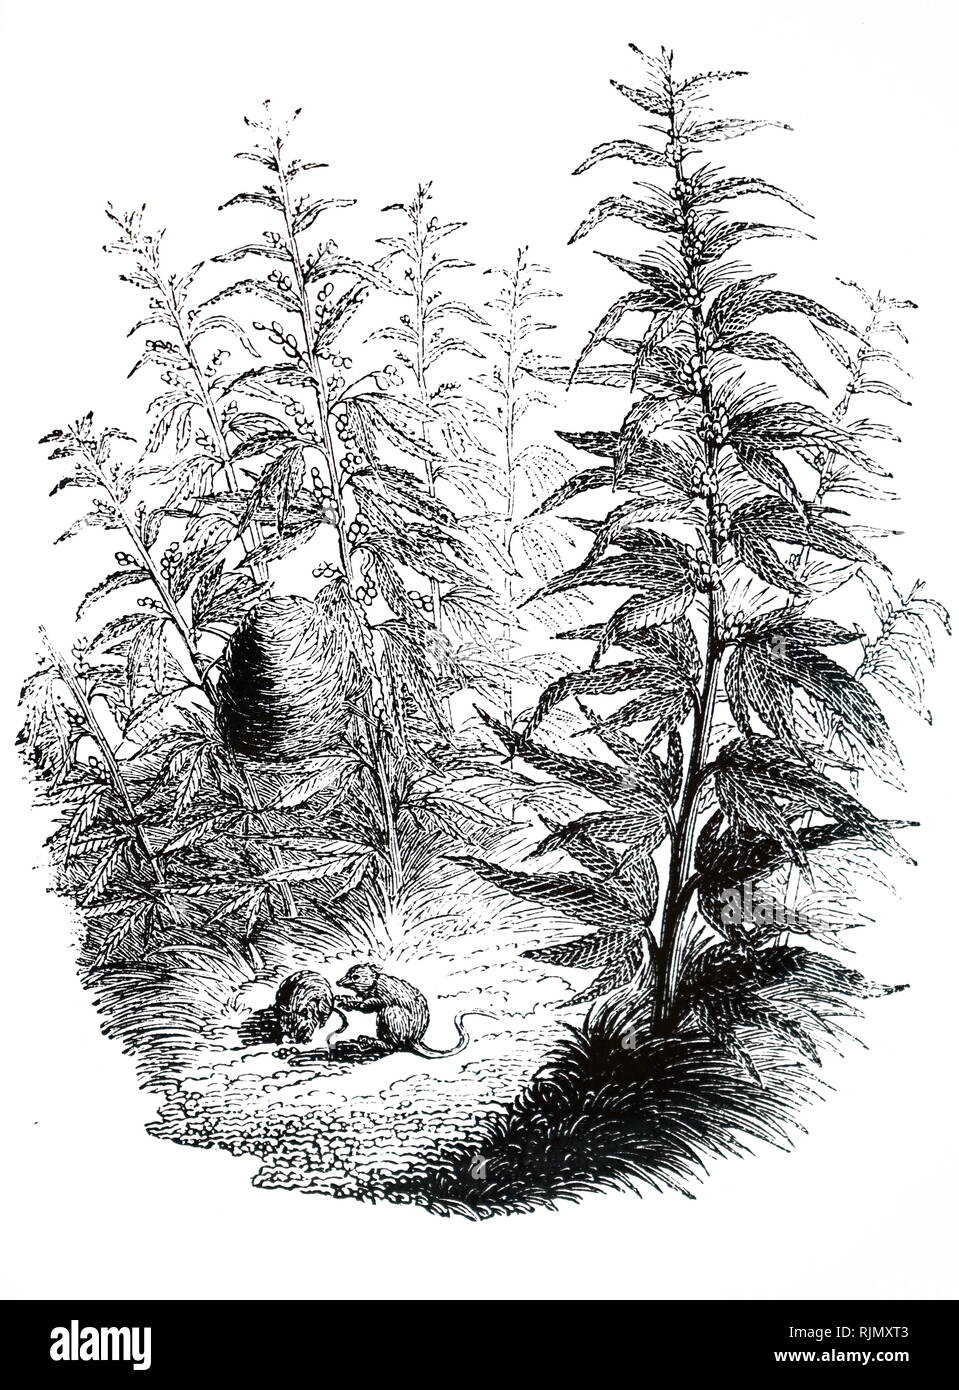 Une gravure illustrant LE CANNABIS SATIVA (chanvre). Destiné principalement à titre de culture pour produire des fibres pour cordage à voiles, et d'un matériau résistant à l'usure des chemises et blouses. ,D'huile a été extraite des graines et le résidu a été nourri à stock comme le tourteau. Le cannabis stupéfiants doux est obtenu à partir de cela, ainsi que de chanvre indien (C. indica) 1851 Banque D'Images